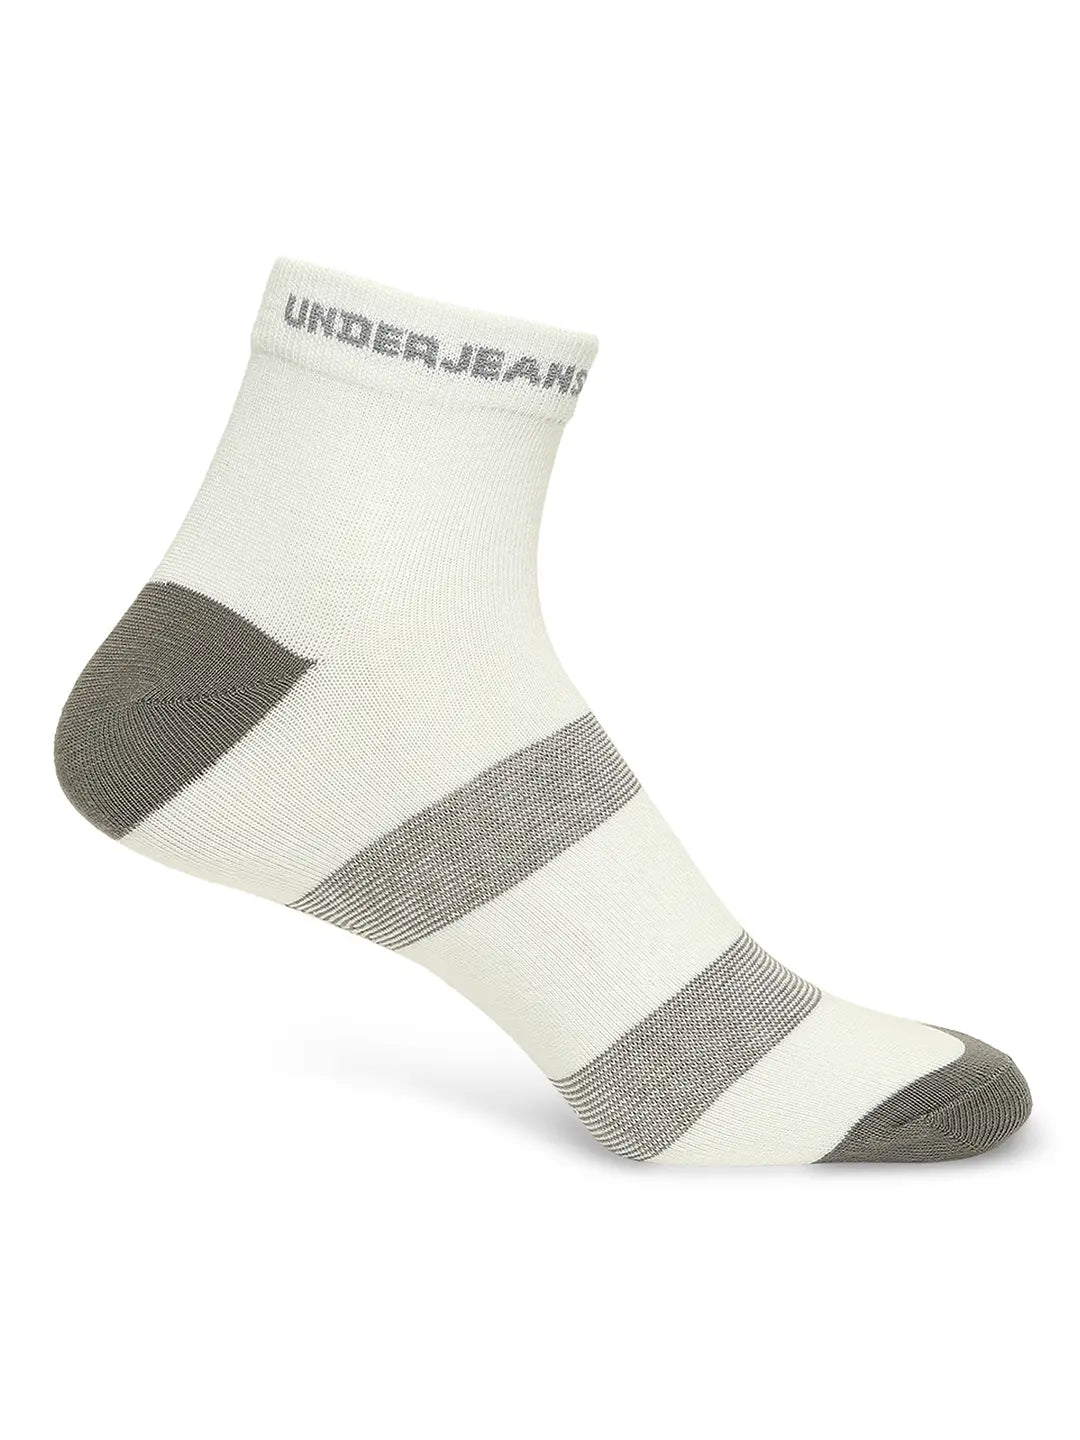 Men Premium White & Olive Ankle Length Socks - Pack Of 2- Underjeans by Spykar